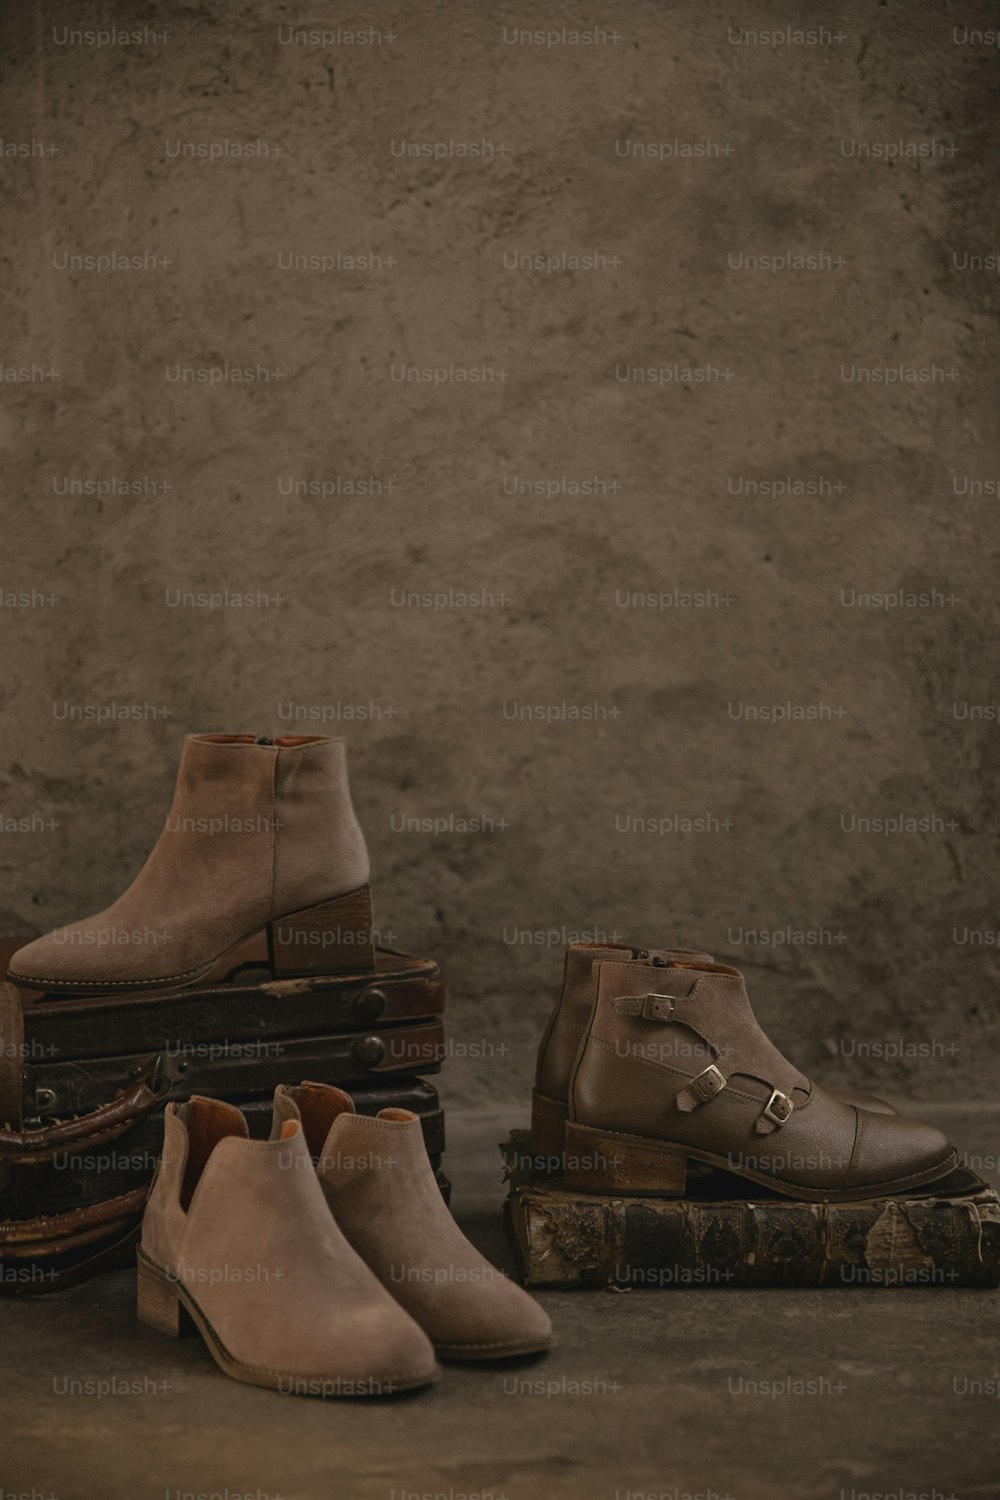 Un grupo de zapatos sentados encima de una pila de equipaje